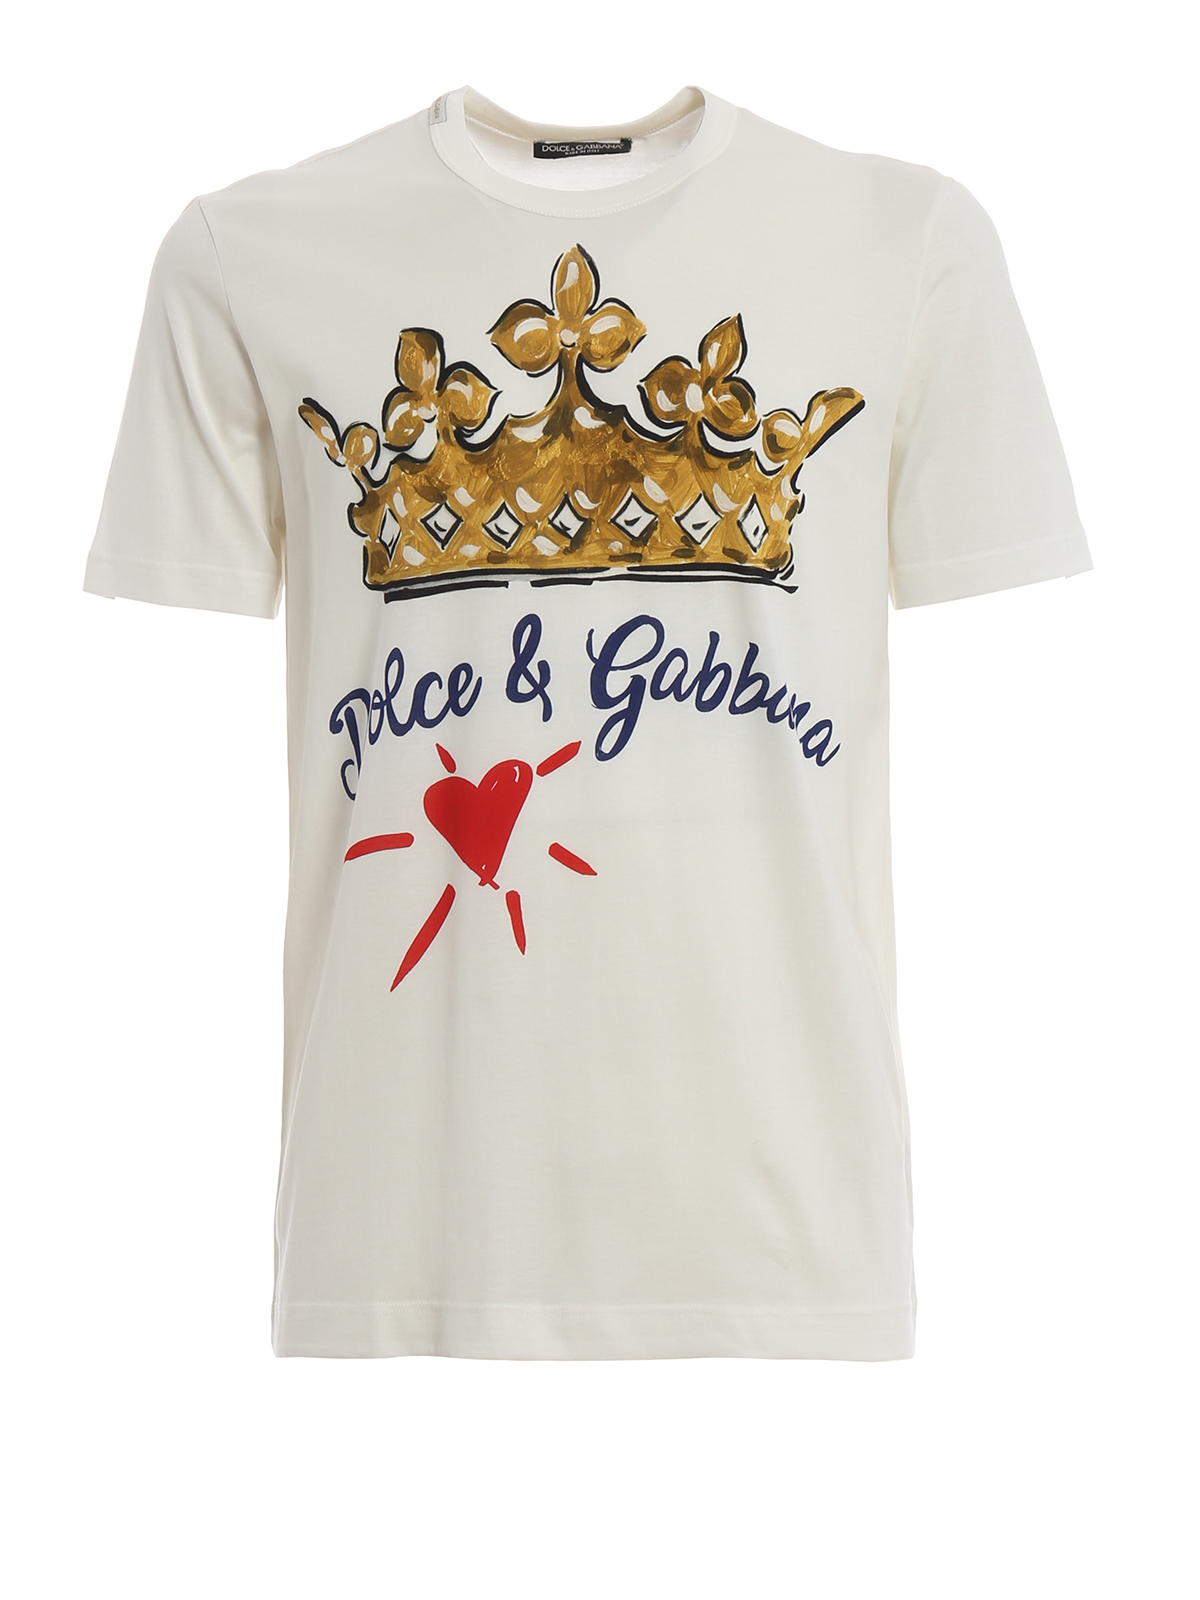 dolce and gabbana crown shirt